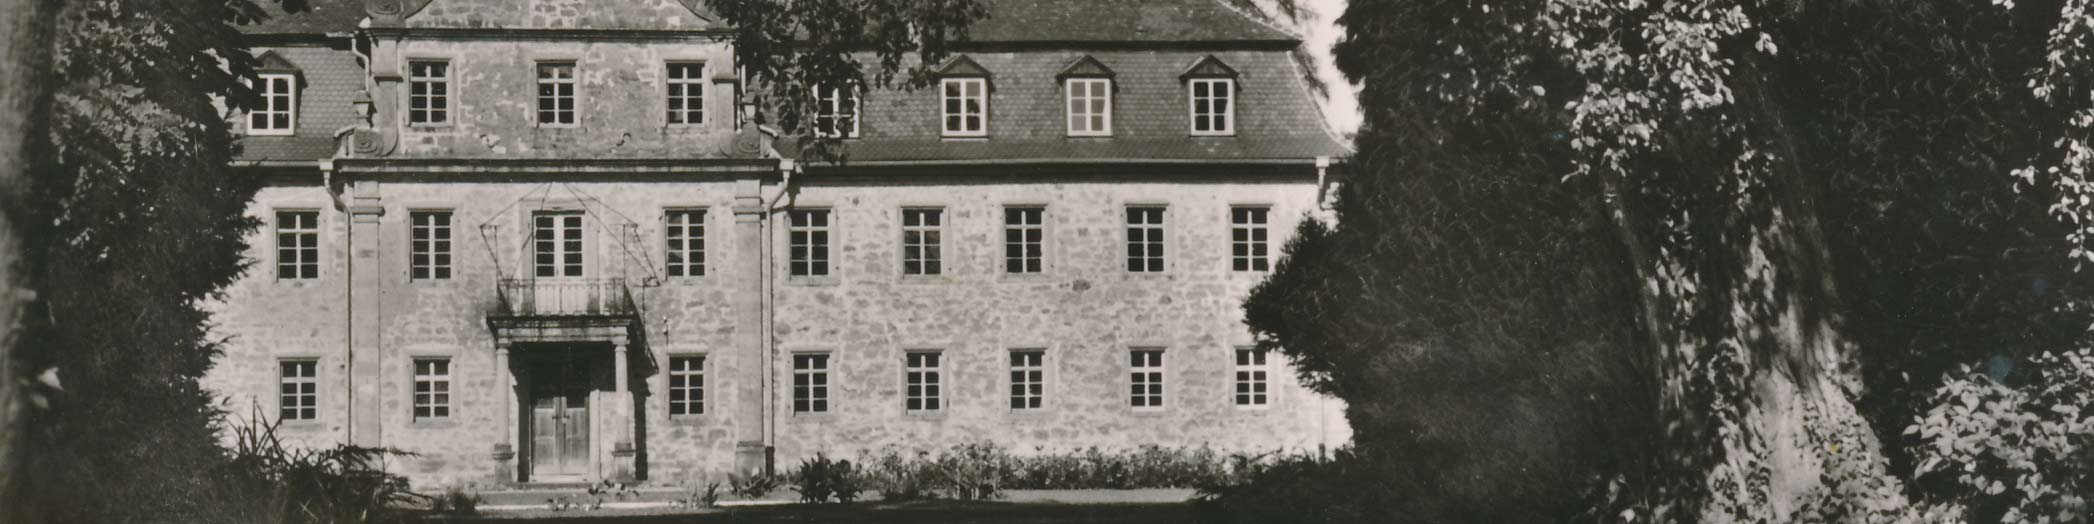 Historische Abbildung Schloss Friedrichsruhe Haupteingang